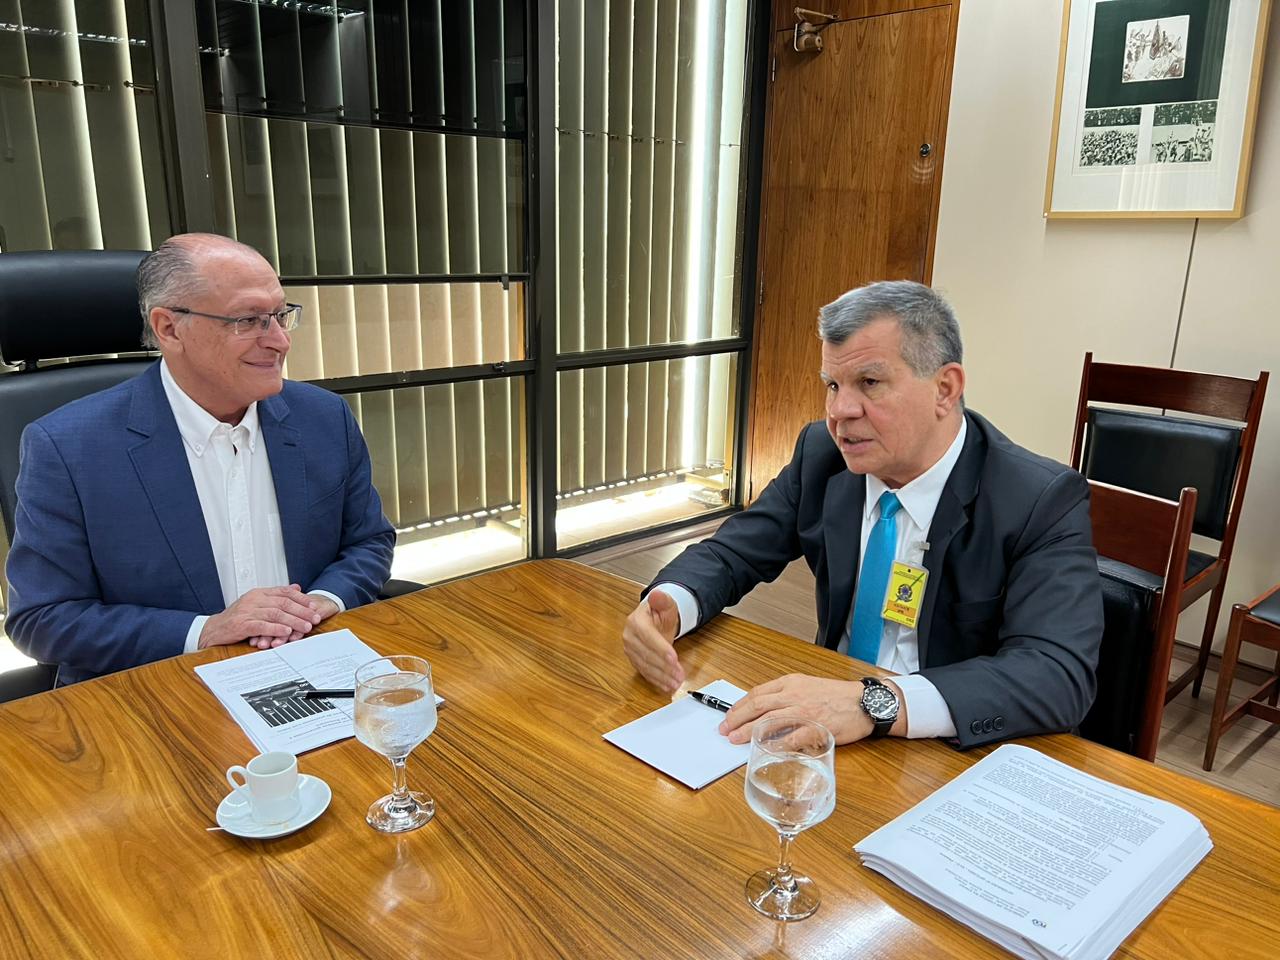 Reunião entre Alckmin e Bosco Saraiva ocorreu nesta quinta (6) - Foto: Izaías Godinho/TV Norte em Brasília